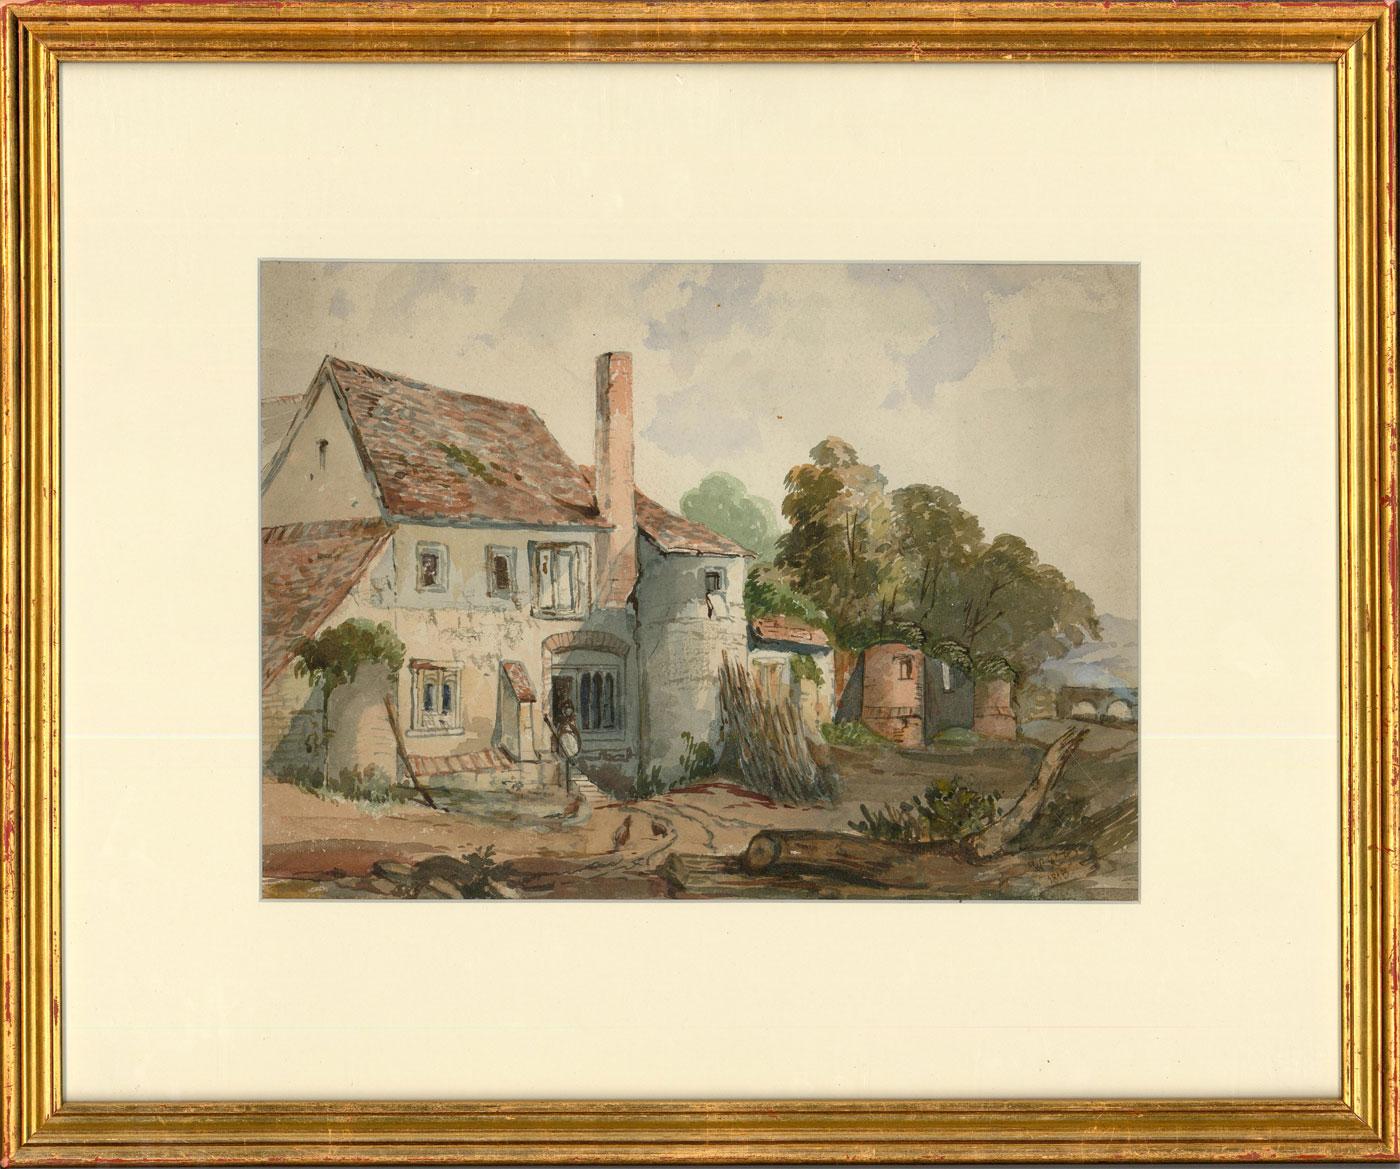 Unknown Landscape Art - W.R.P - Framed 1815 Watercolour, The Castle Inn